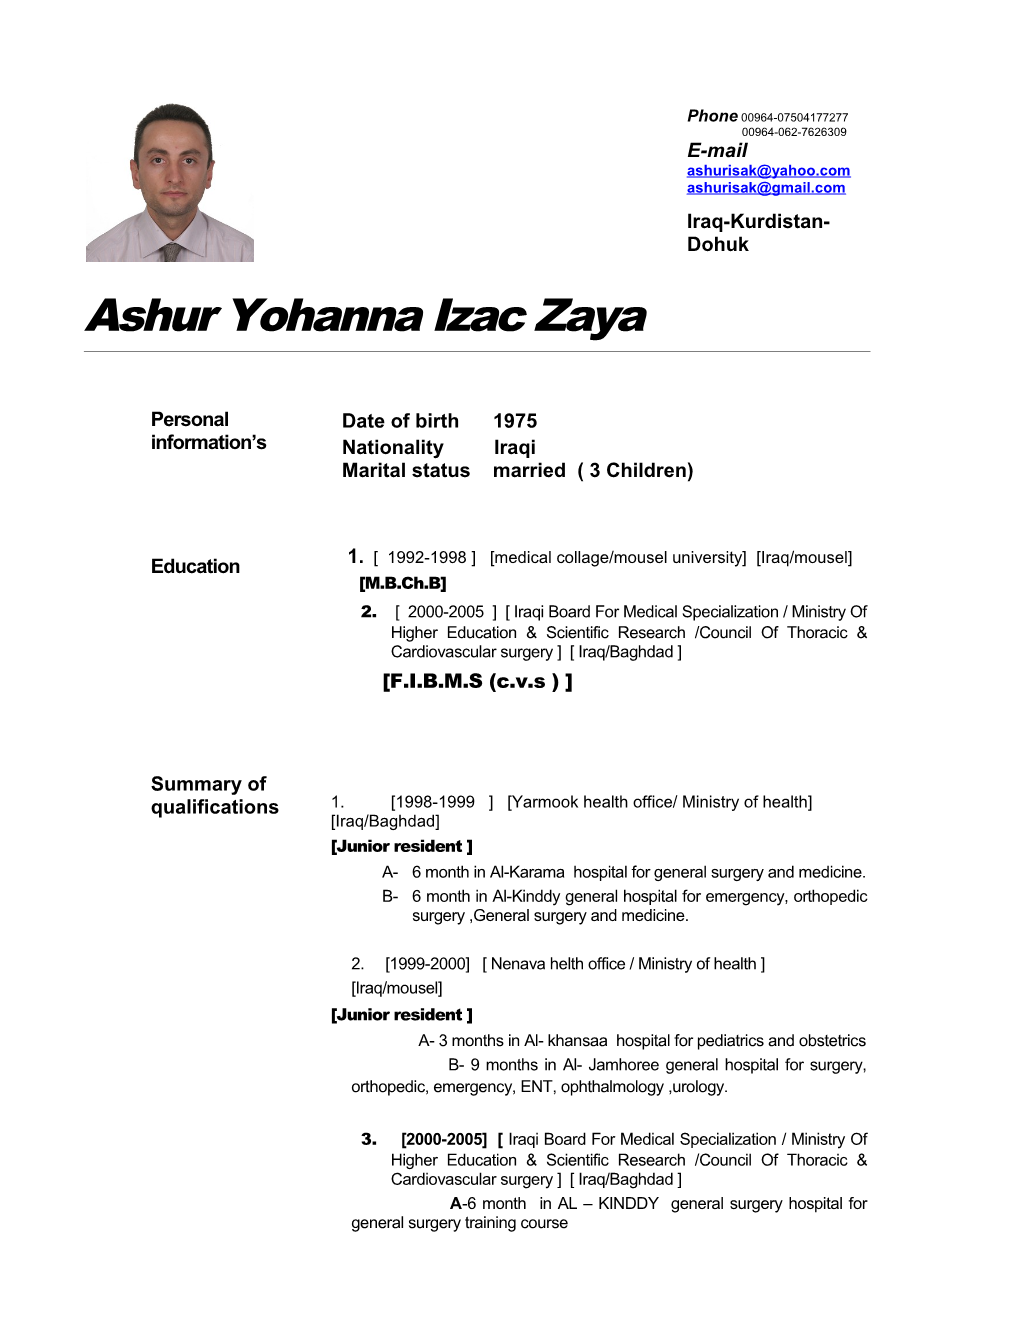 Ashur Yohanna Izac Zaya